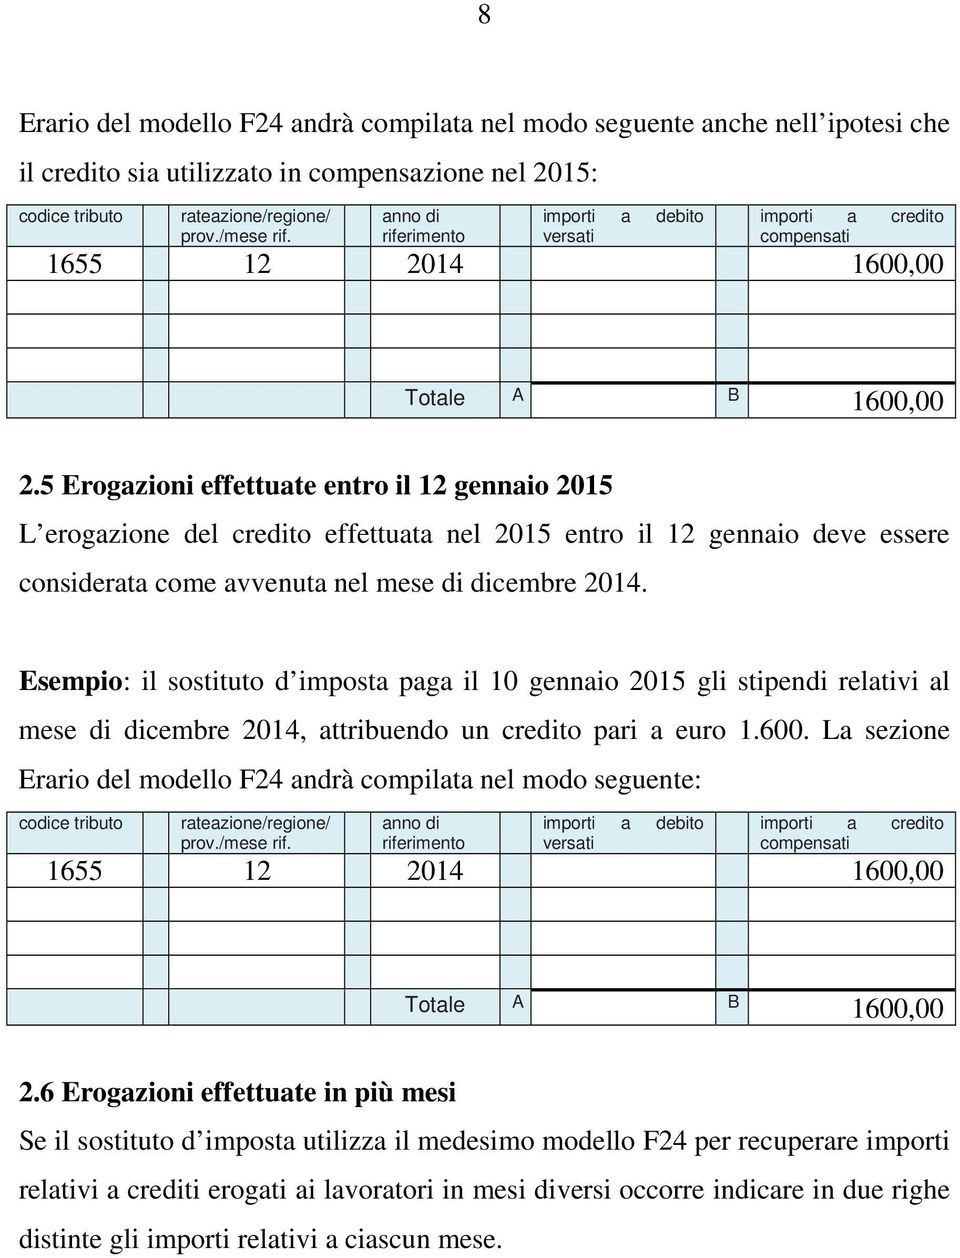 Esempio: il sostituto d imposta paga il 10 gennaio 2015 gli stipendi relativi al mese di dicembre 2014, attribuendo un credito pari a euro 1.600.